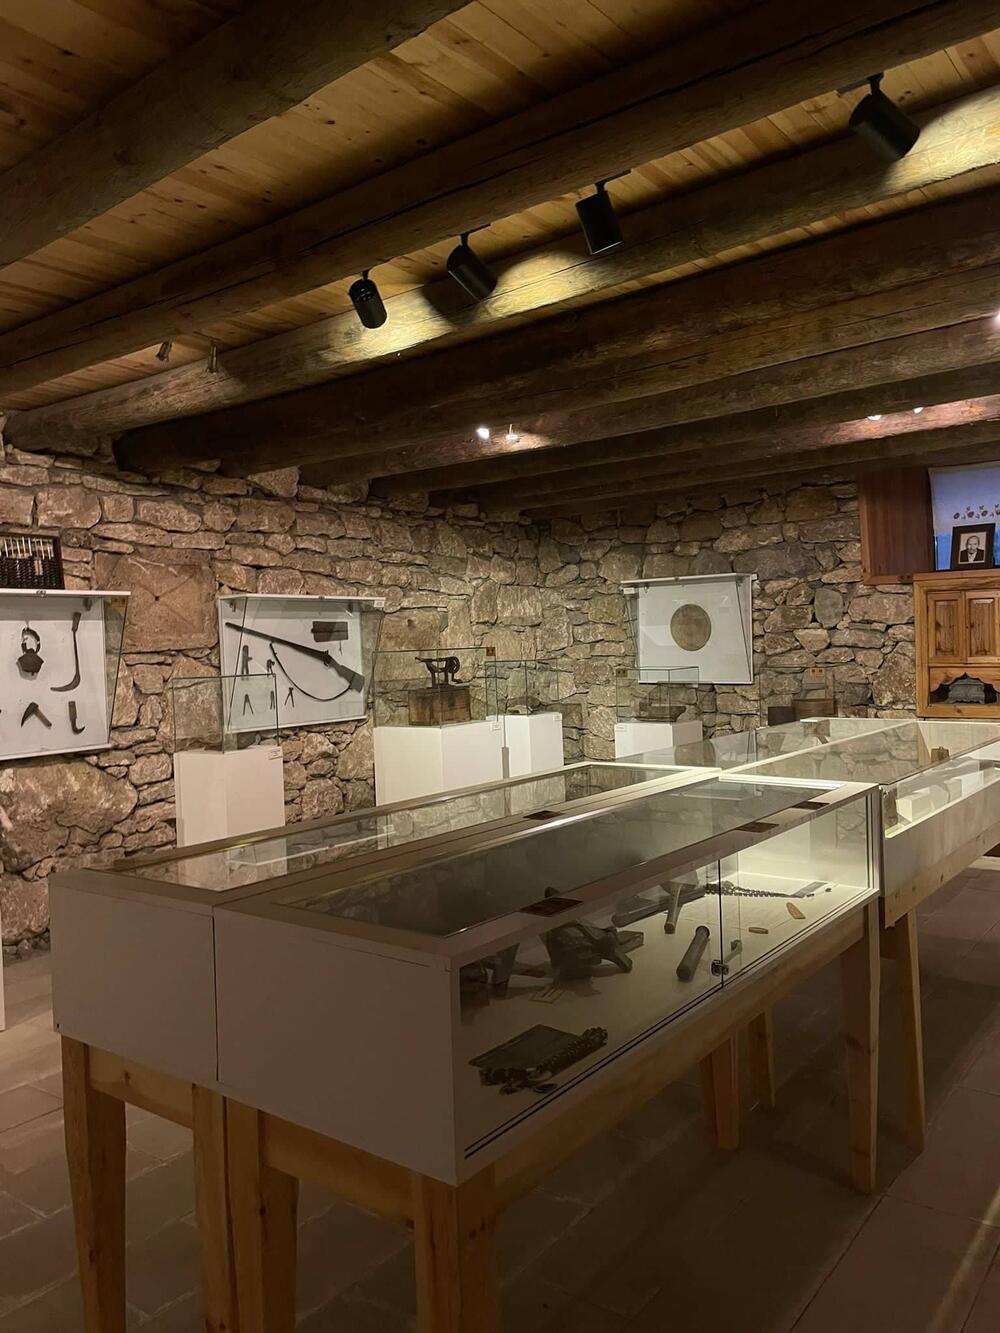 <p>Etnografski muzej Kenan Javuz u malom turskom gradu Bajburtu u crnomorskoj regiji pruža iskustvo putovanja kroz vrijeme dok oživljava prošlost, čuva tradiciju i prenosi je dalje, a posjetiocima nudi noćenje u muzeju, jedinstven gastronomski užitak, bogatu kolekciju muzejskih eksponata u okviru više različitih postavki i niz kulturno-umjetničkih programa</p>